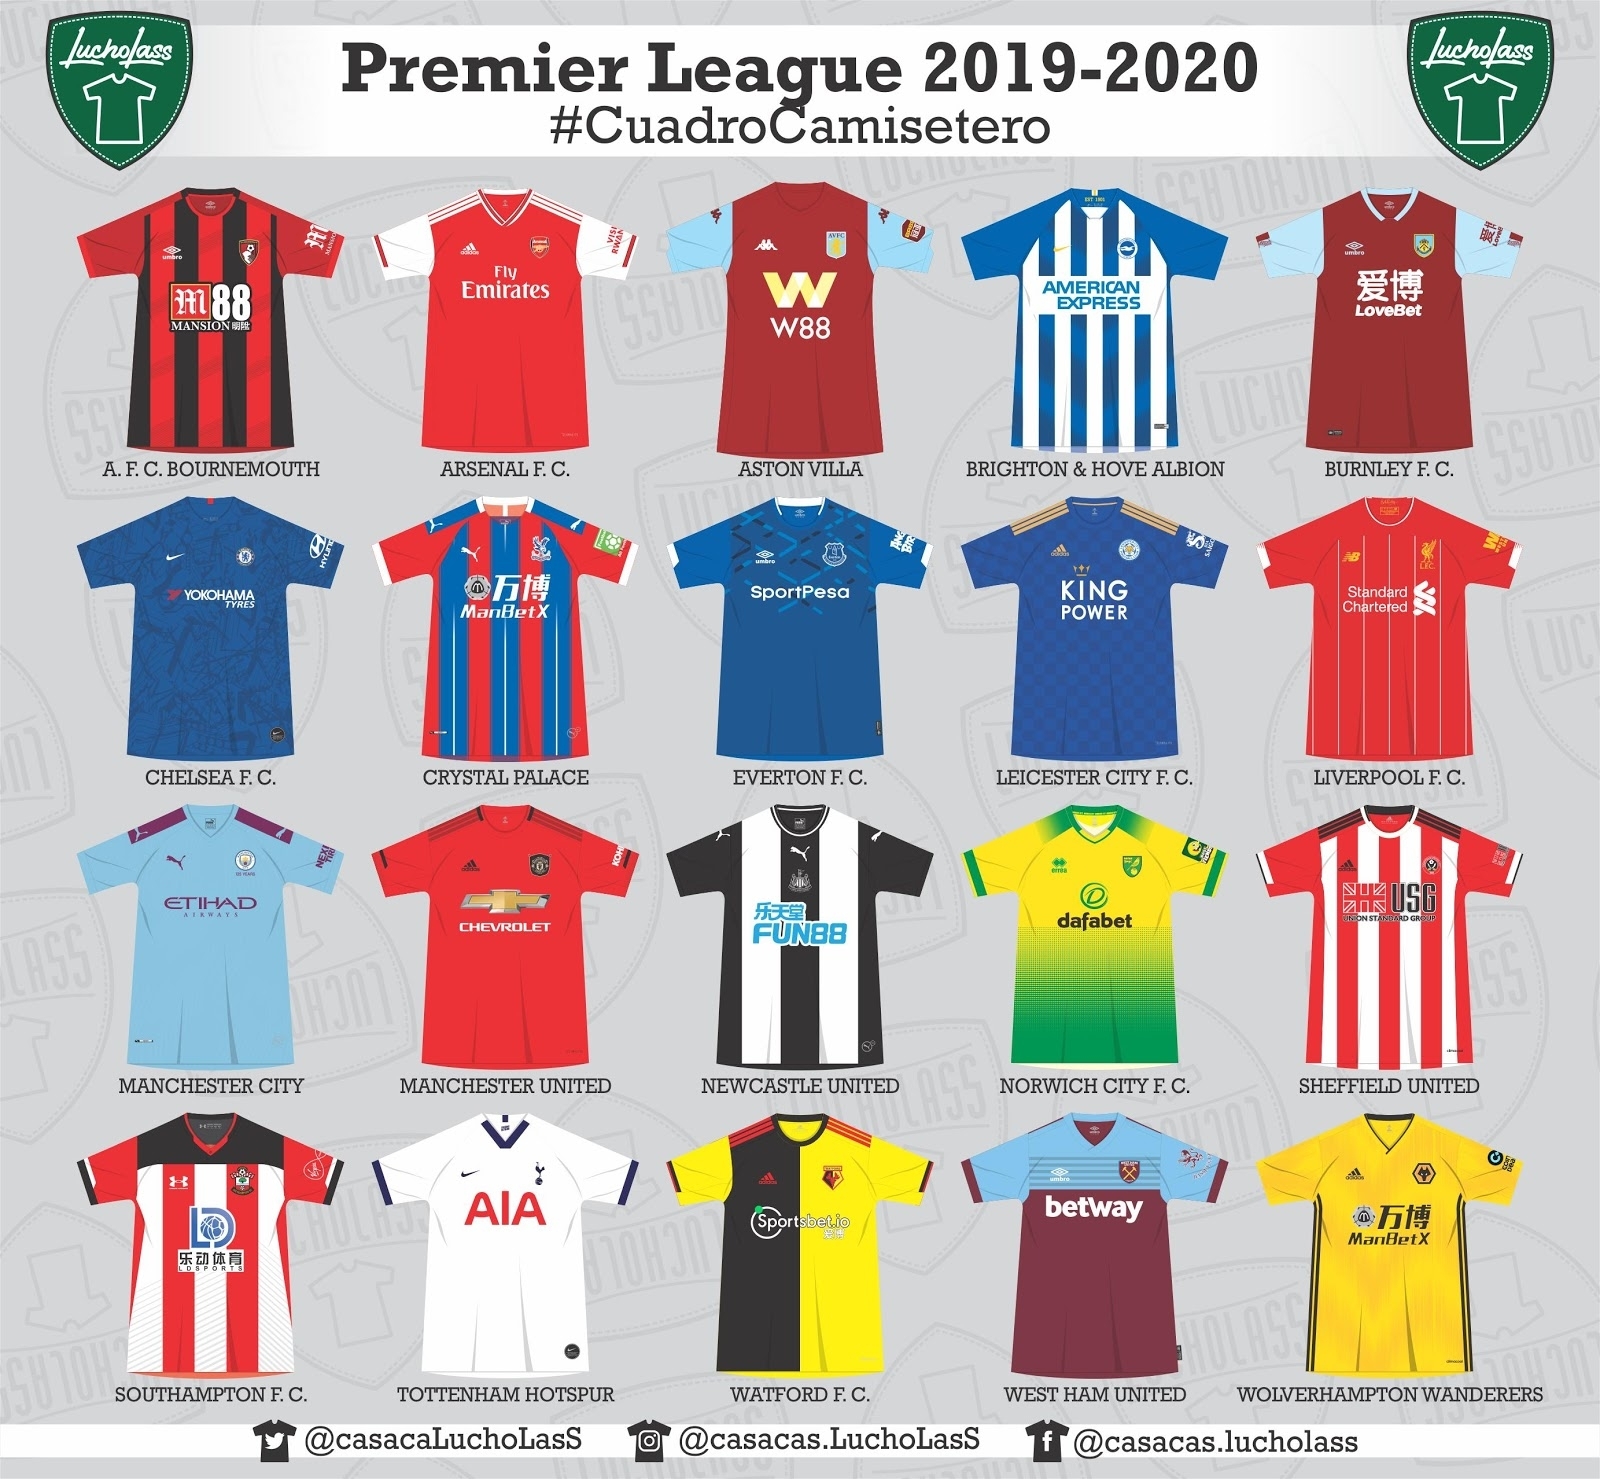 2019-20 Premier League Kit Battle - Adidas Leads, Small Brands pertaining to Premier League 2019-2020 Calendar